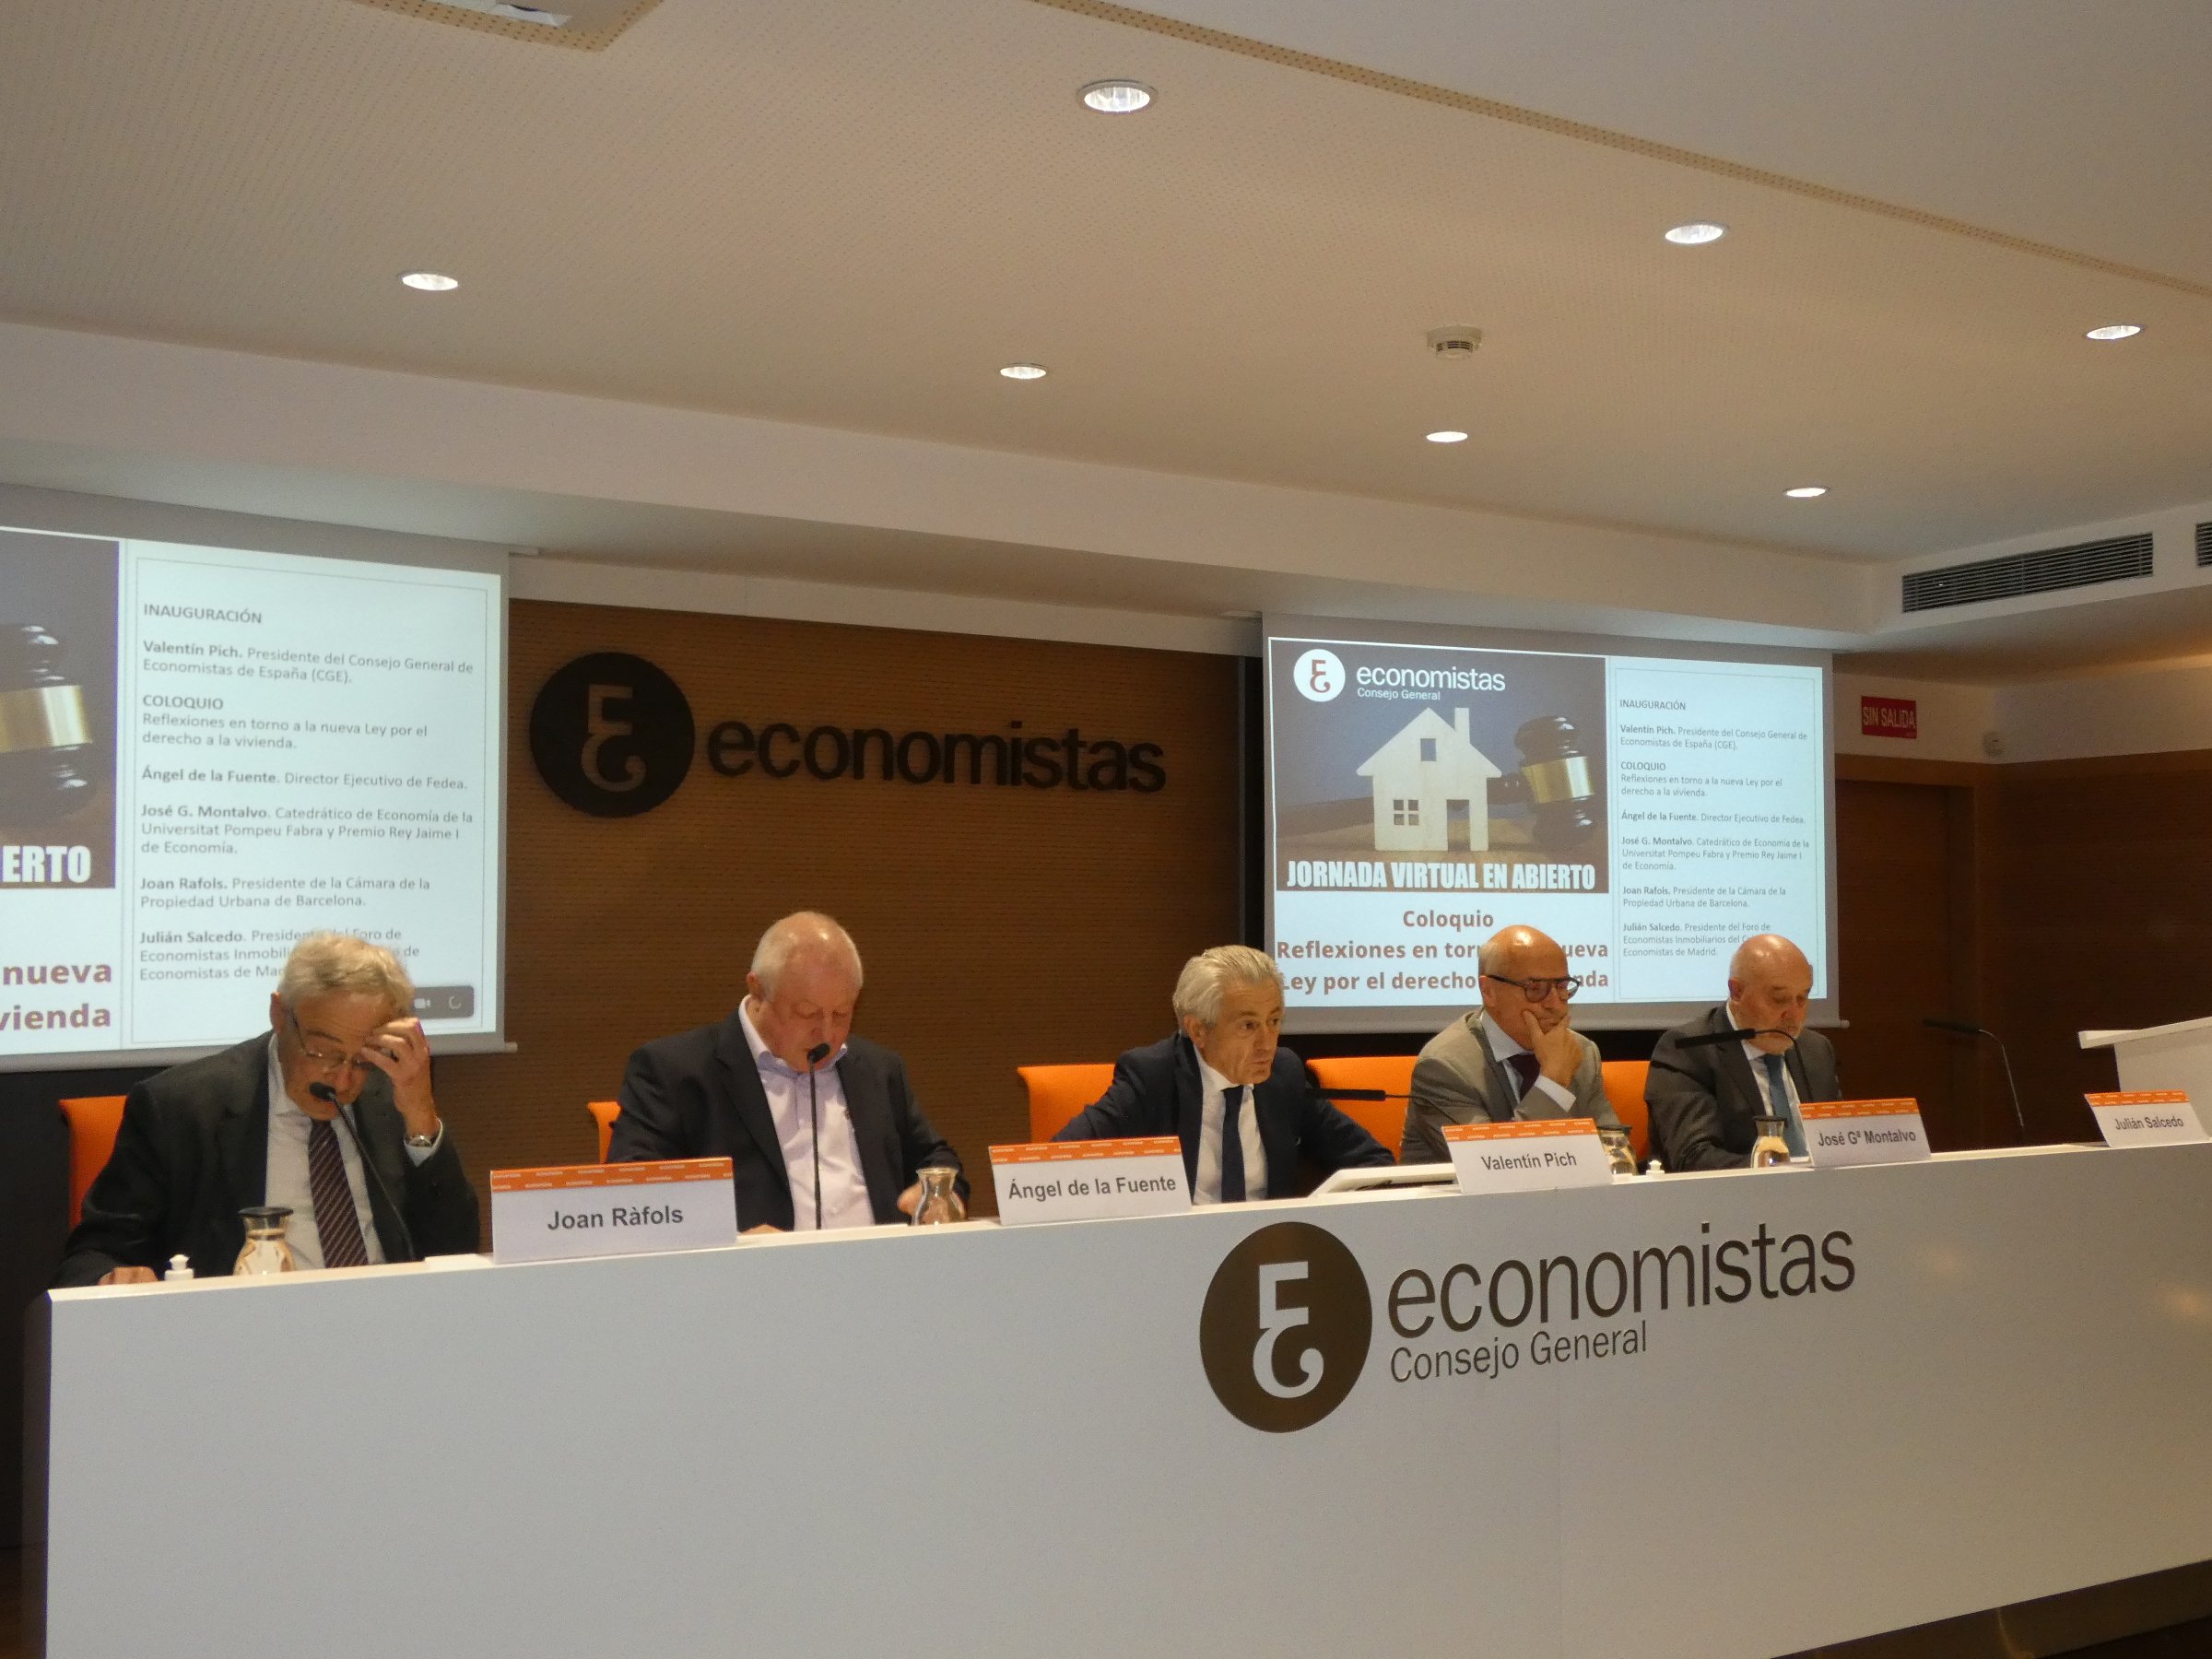 Los economistas creen que el precio de la vivienda en España está "sobrevalorado" y debe bajar